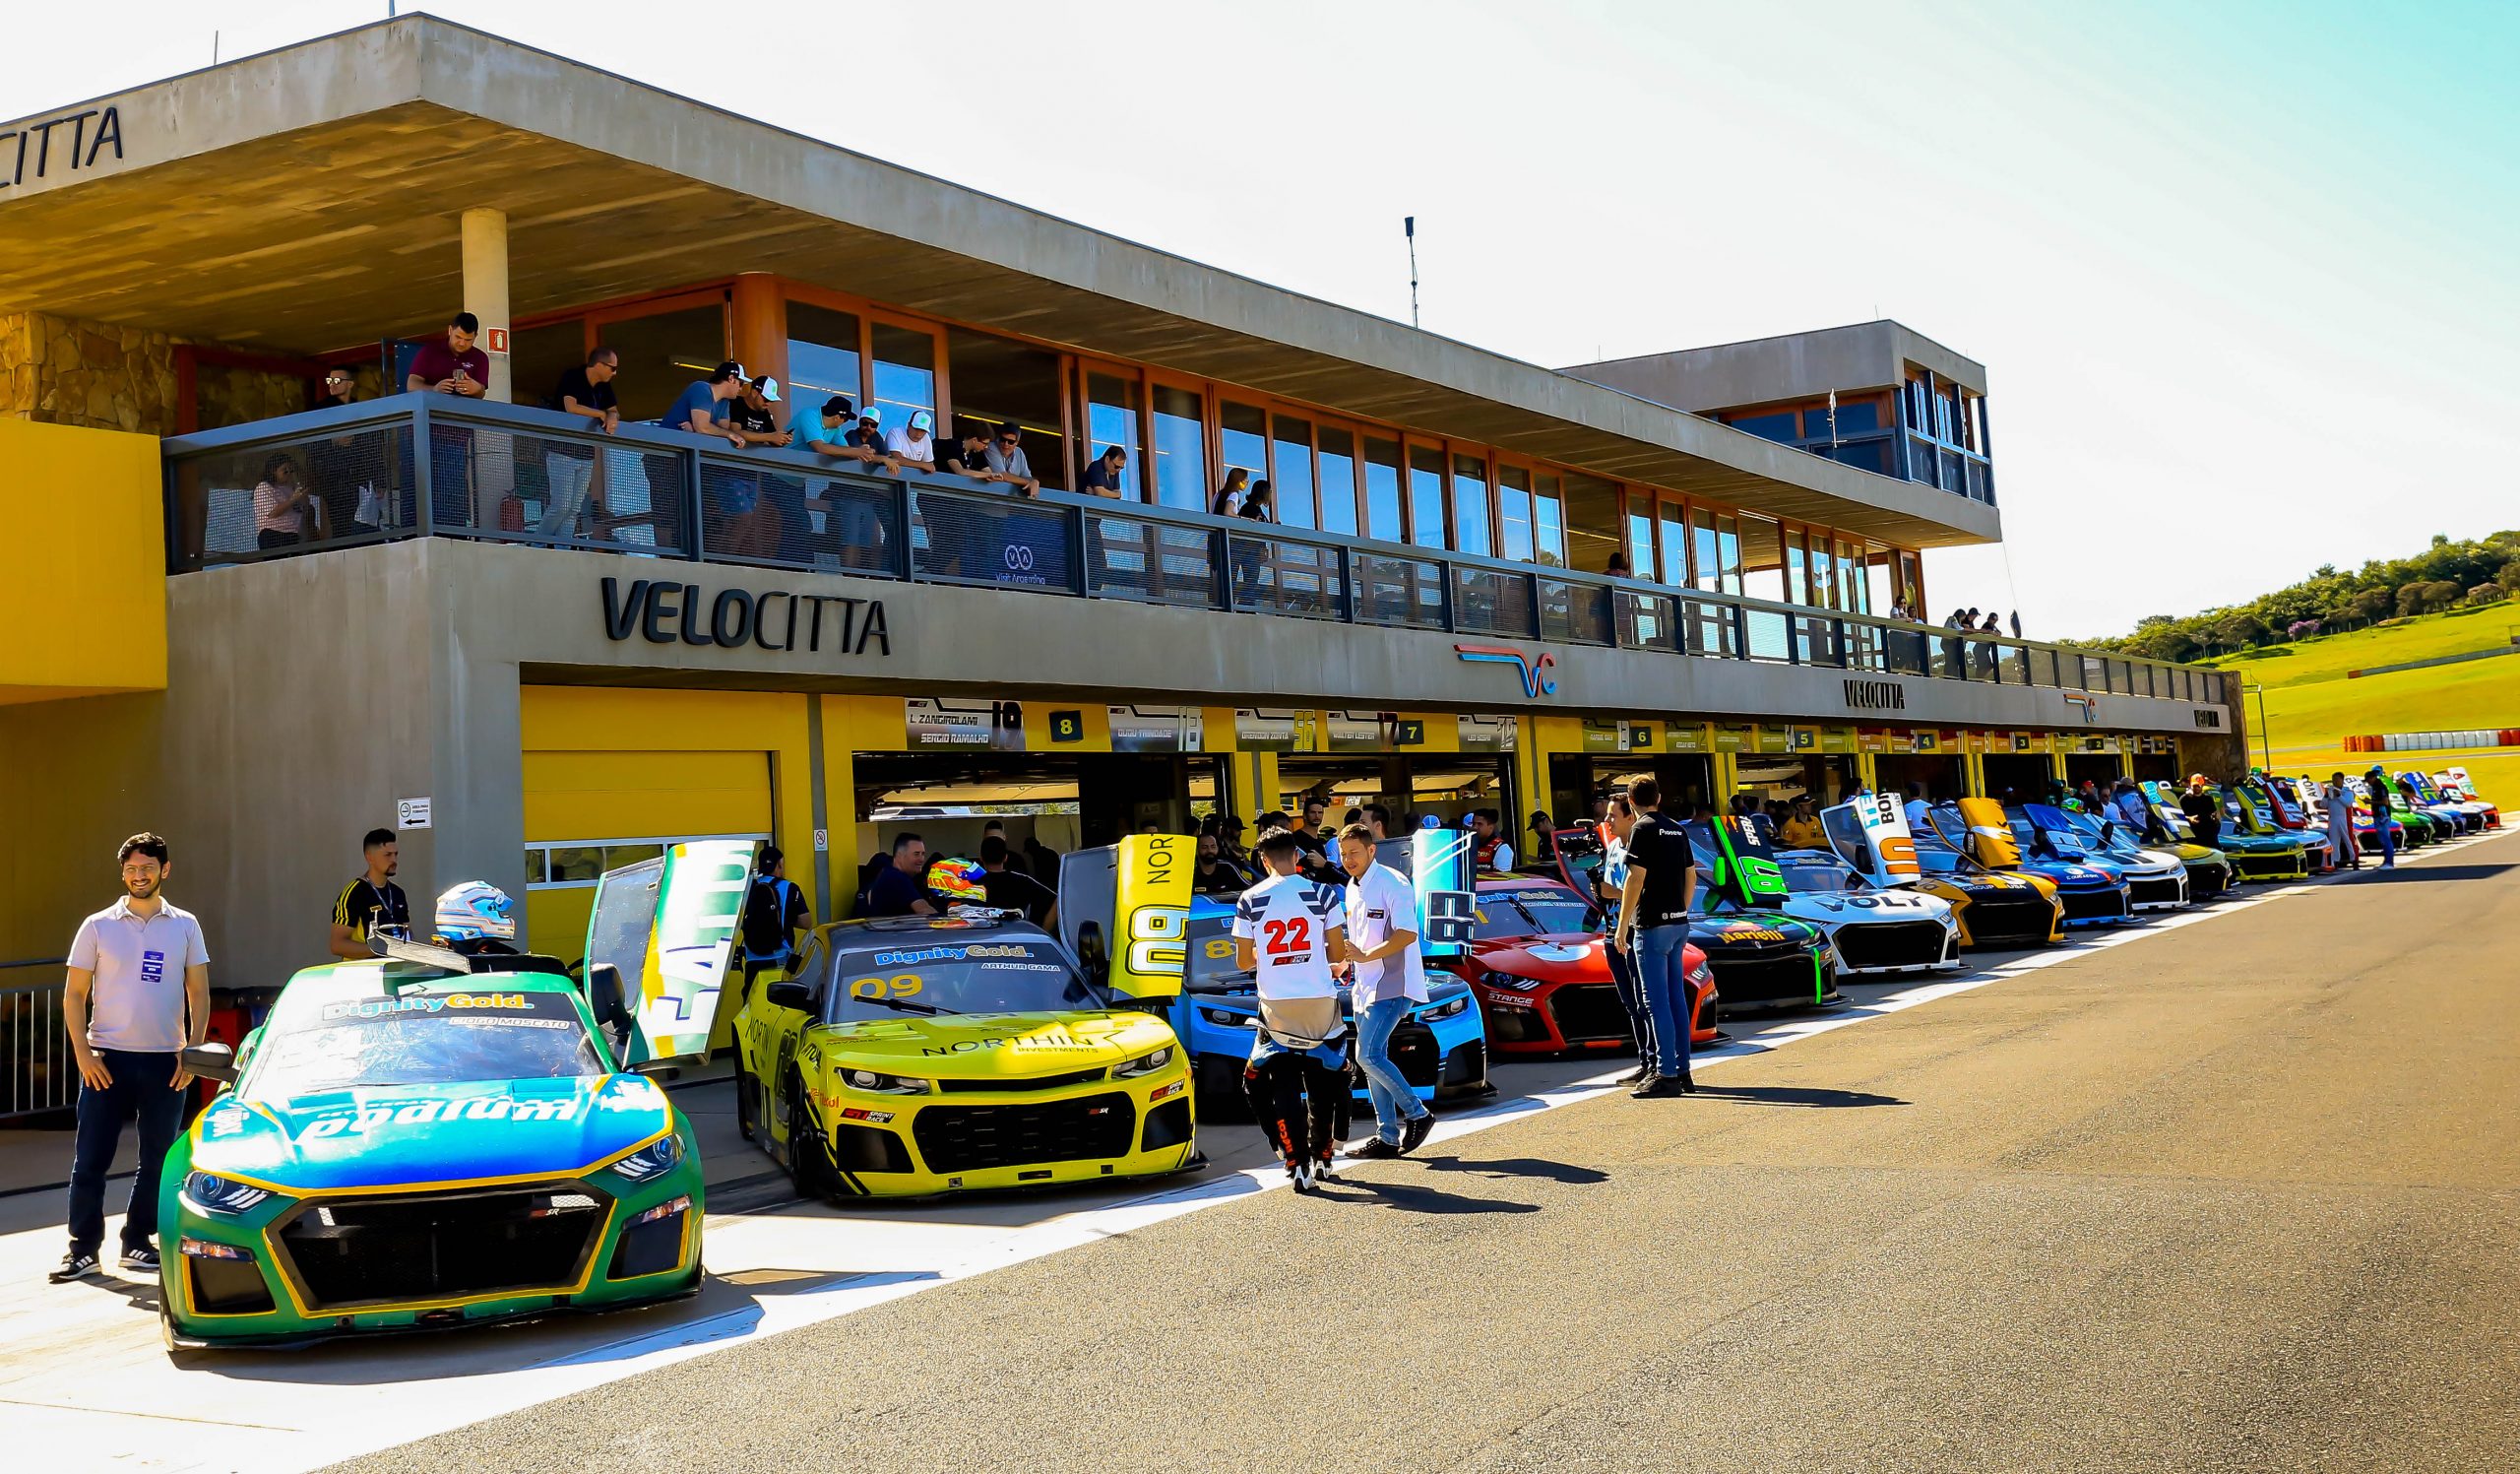 NASCAR Brasil divulga programação da Grande Final do Special Edition inicia em 08 de setembro no Velocitta